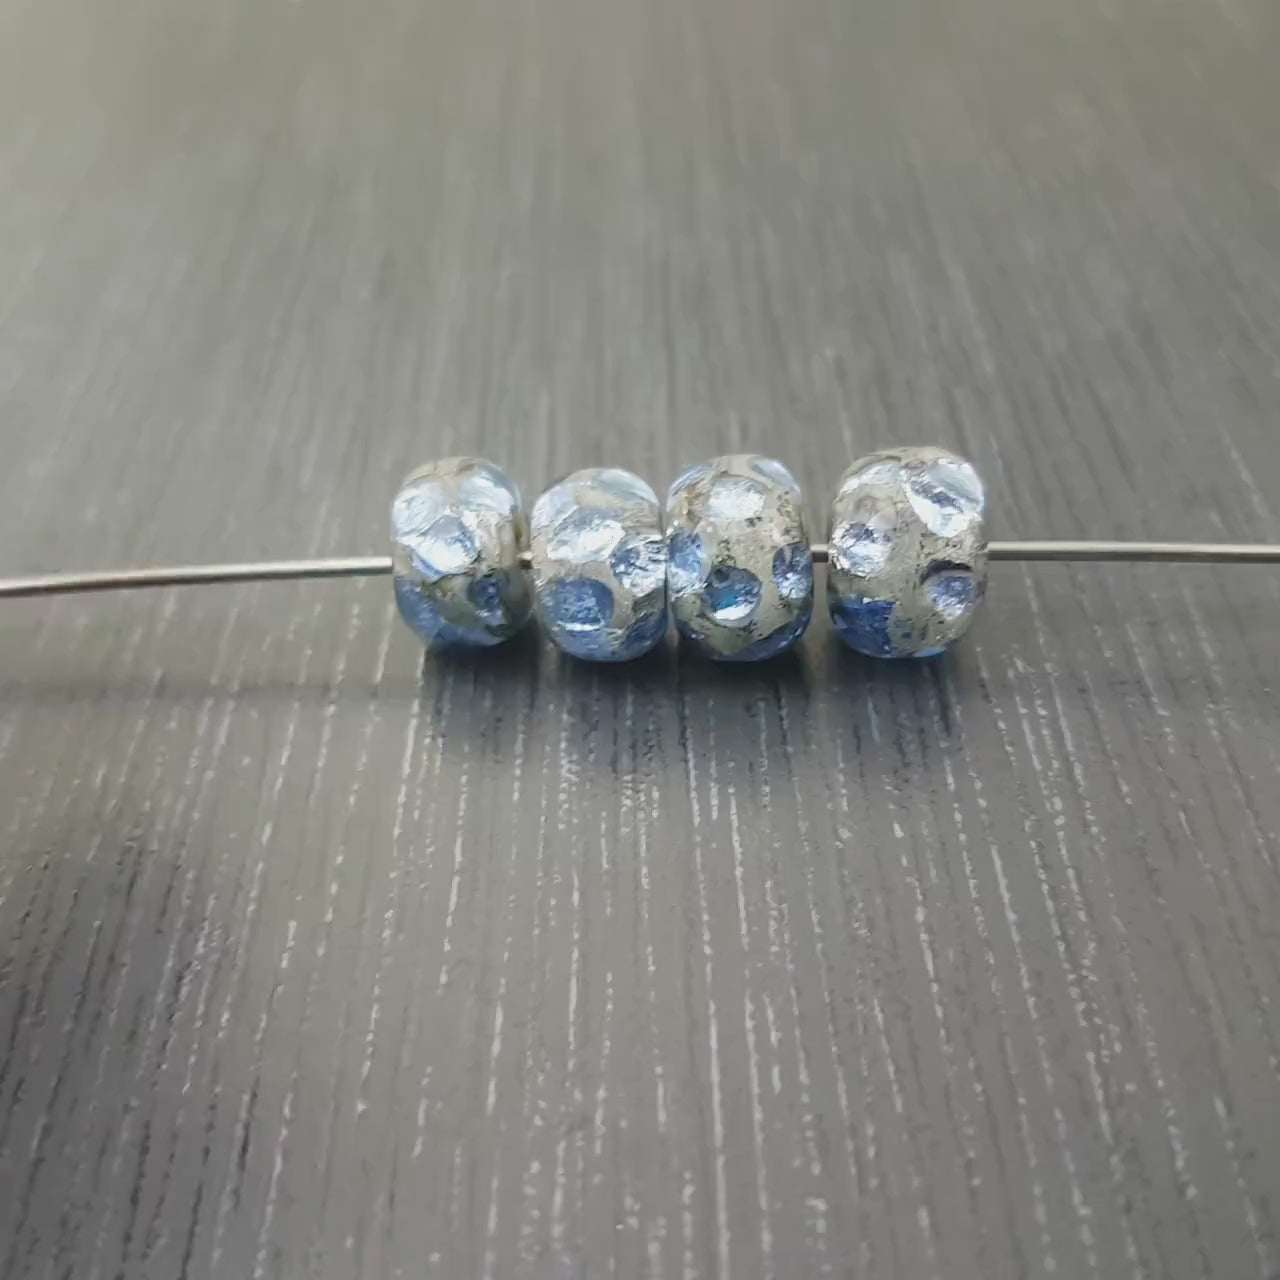 4 petites perles rondes bleu lavande clair, Lot de 4 Perles de verre lampwork bleues claires, Perles bleu pale par Anne Londez